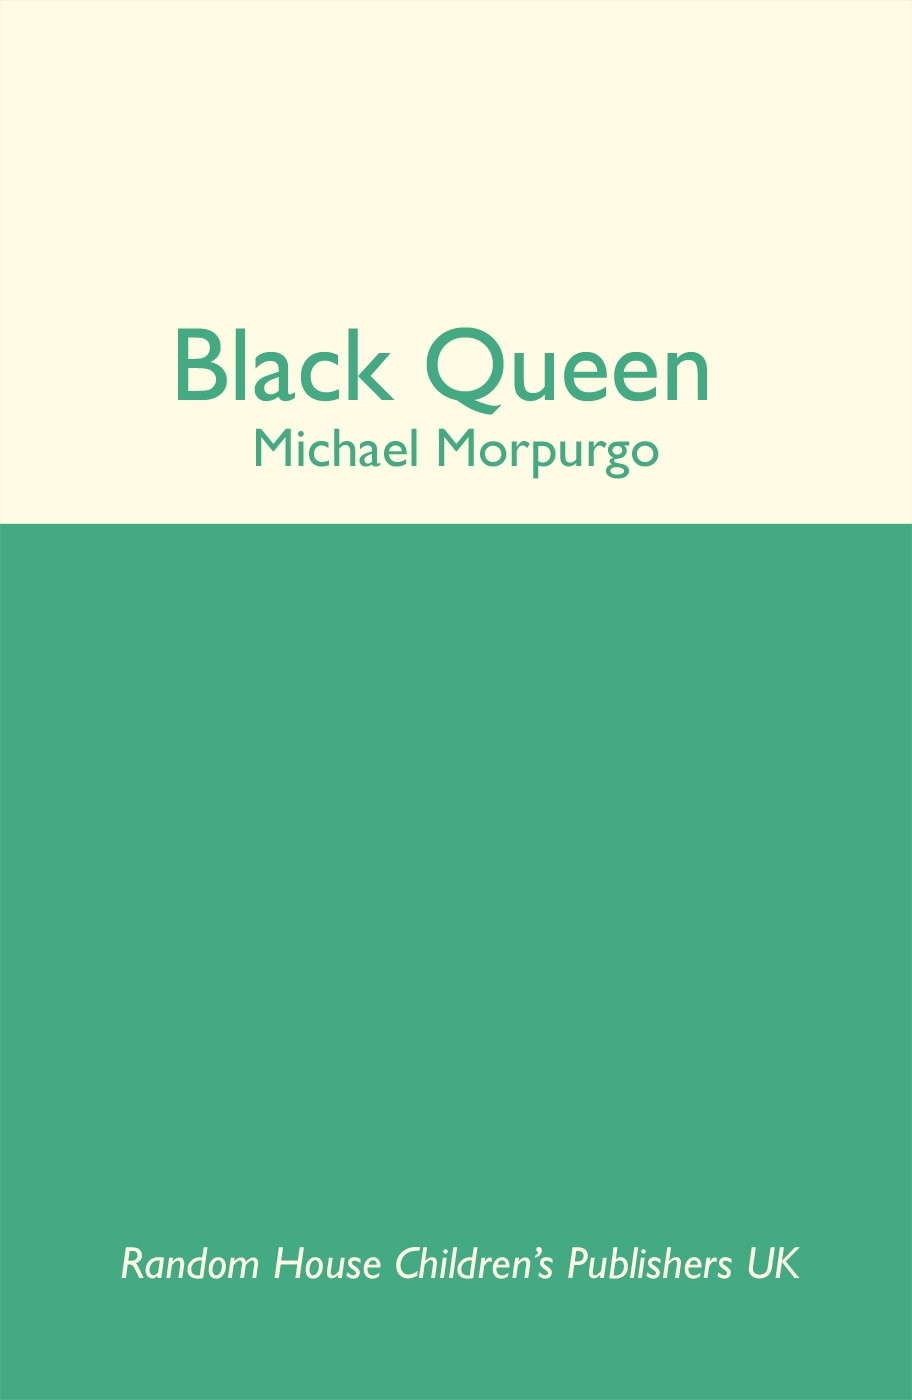 Black Queen by Michael Morpurgo